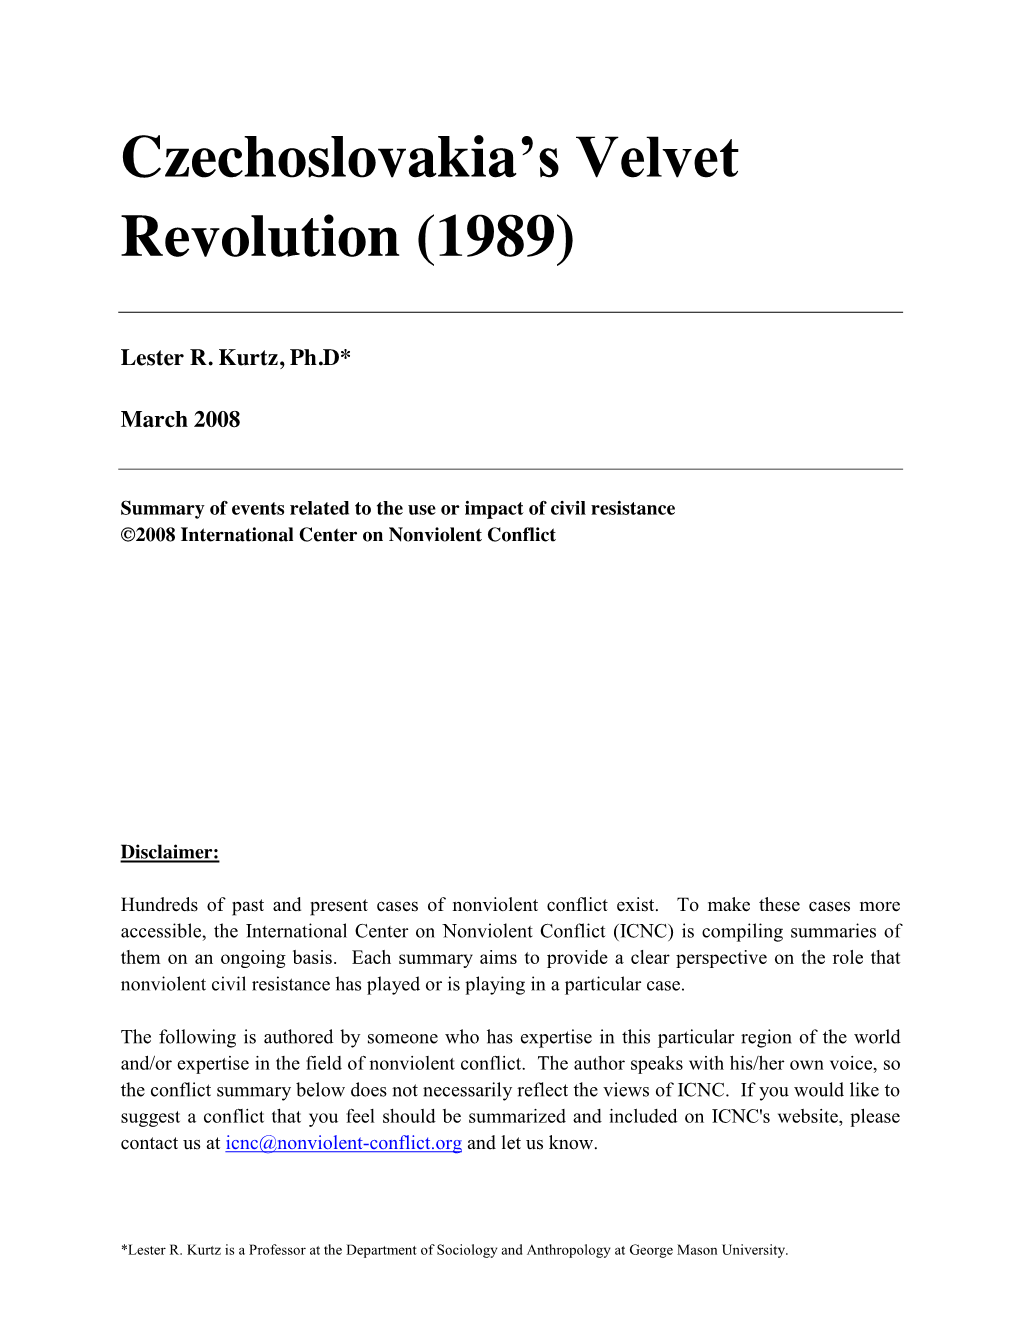 Czechoslovakia's Velvet Revolution